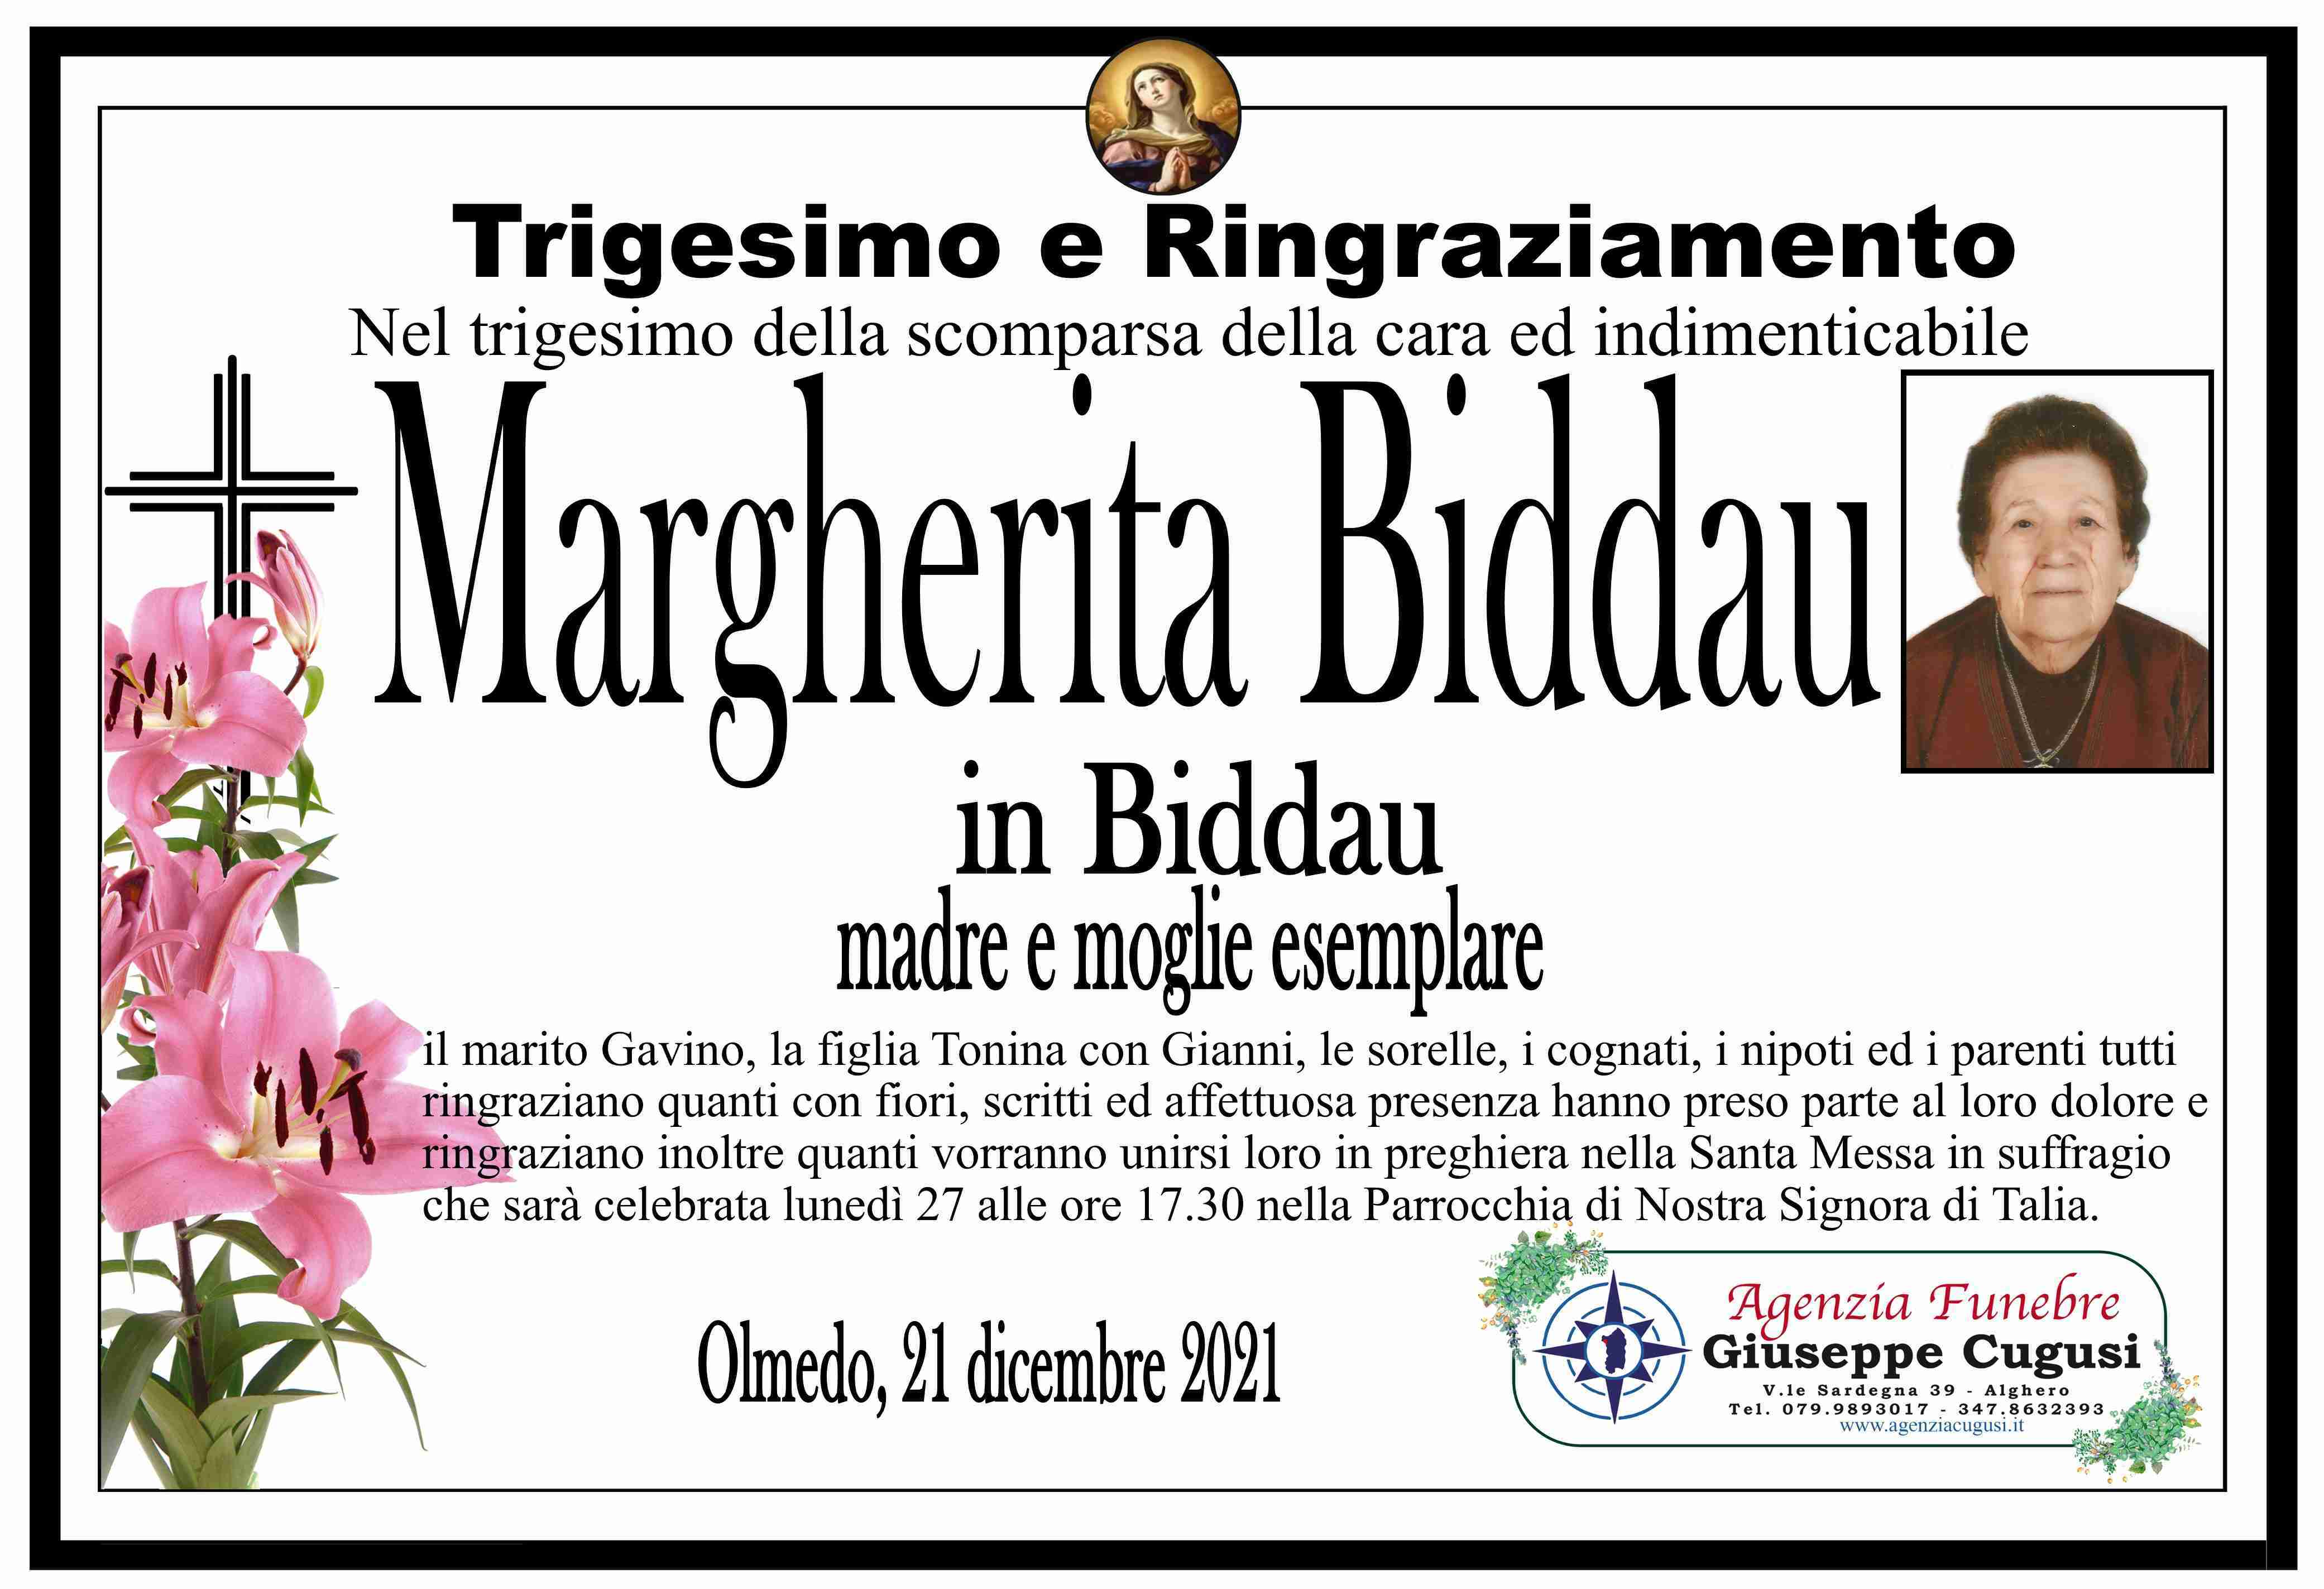 Margherita Biddau